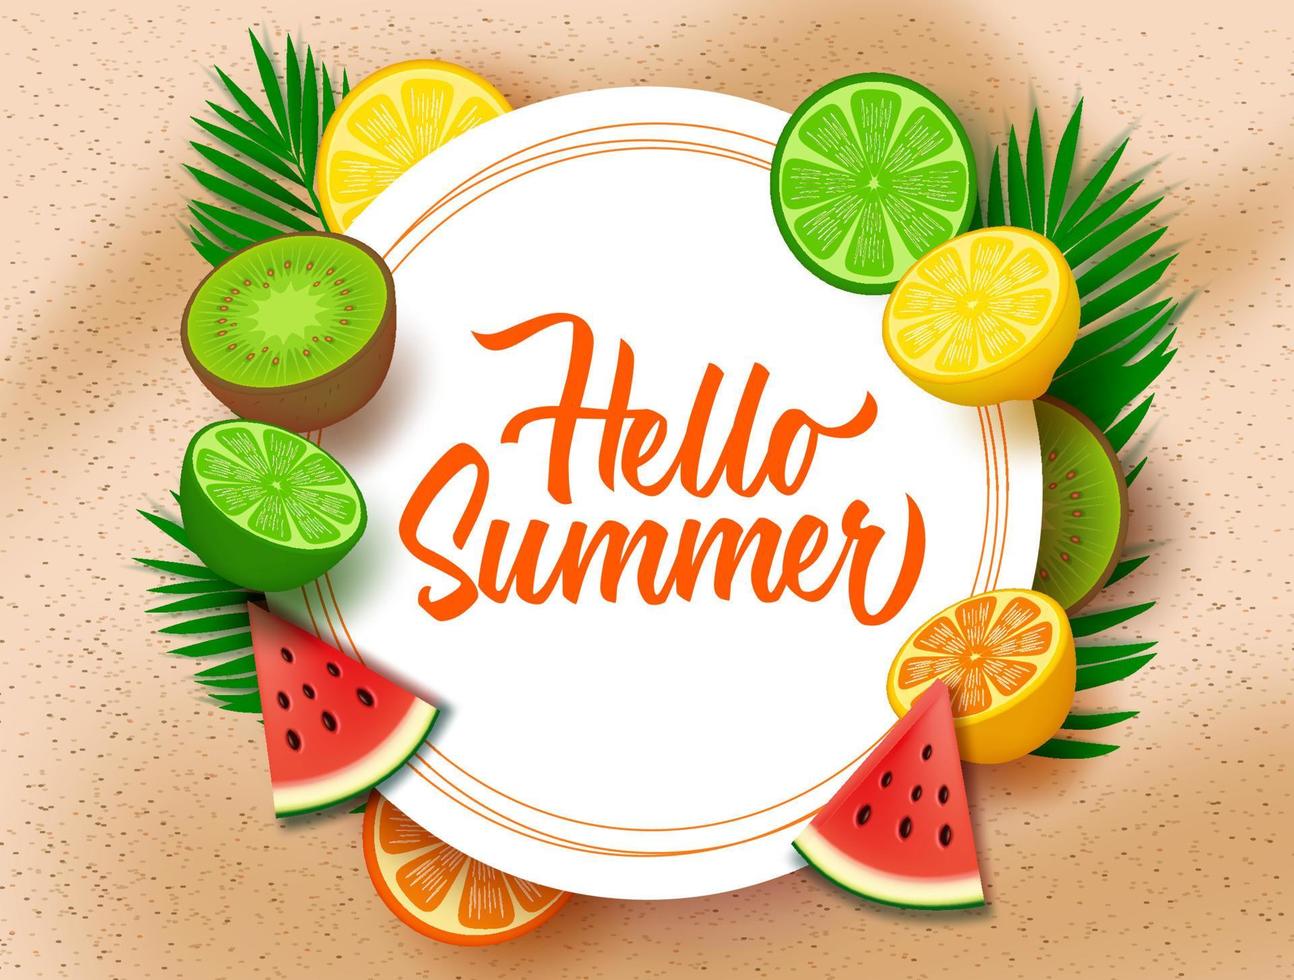 bonjour l'été avec le modèle de fond de fruits. bonjour texte d'été dans un cadre blanc en cercle avec des éléments de fruits tropicaux comme le melon d'eau, le calamansi, le kiwi, l'orange et le citron. vecteur